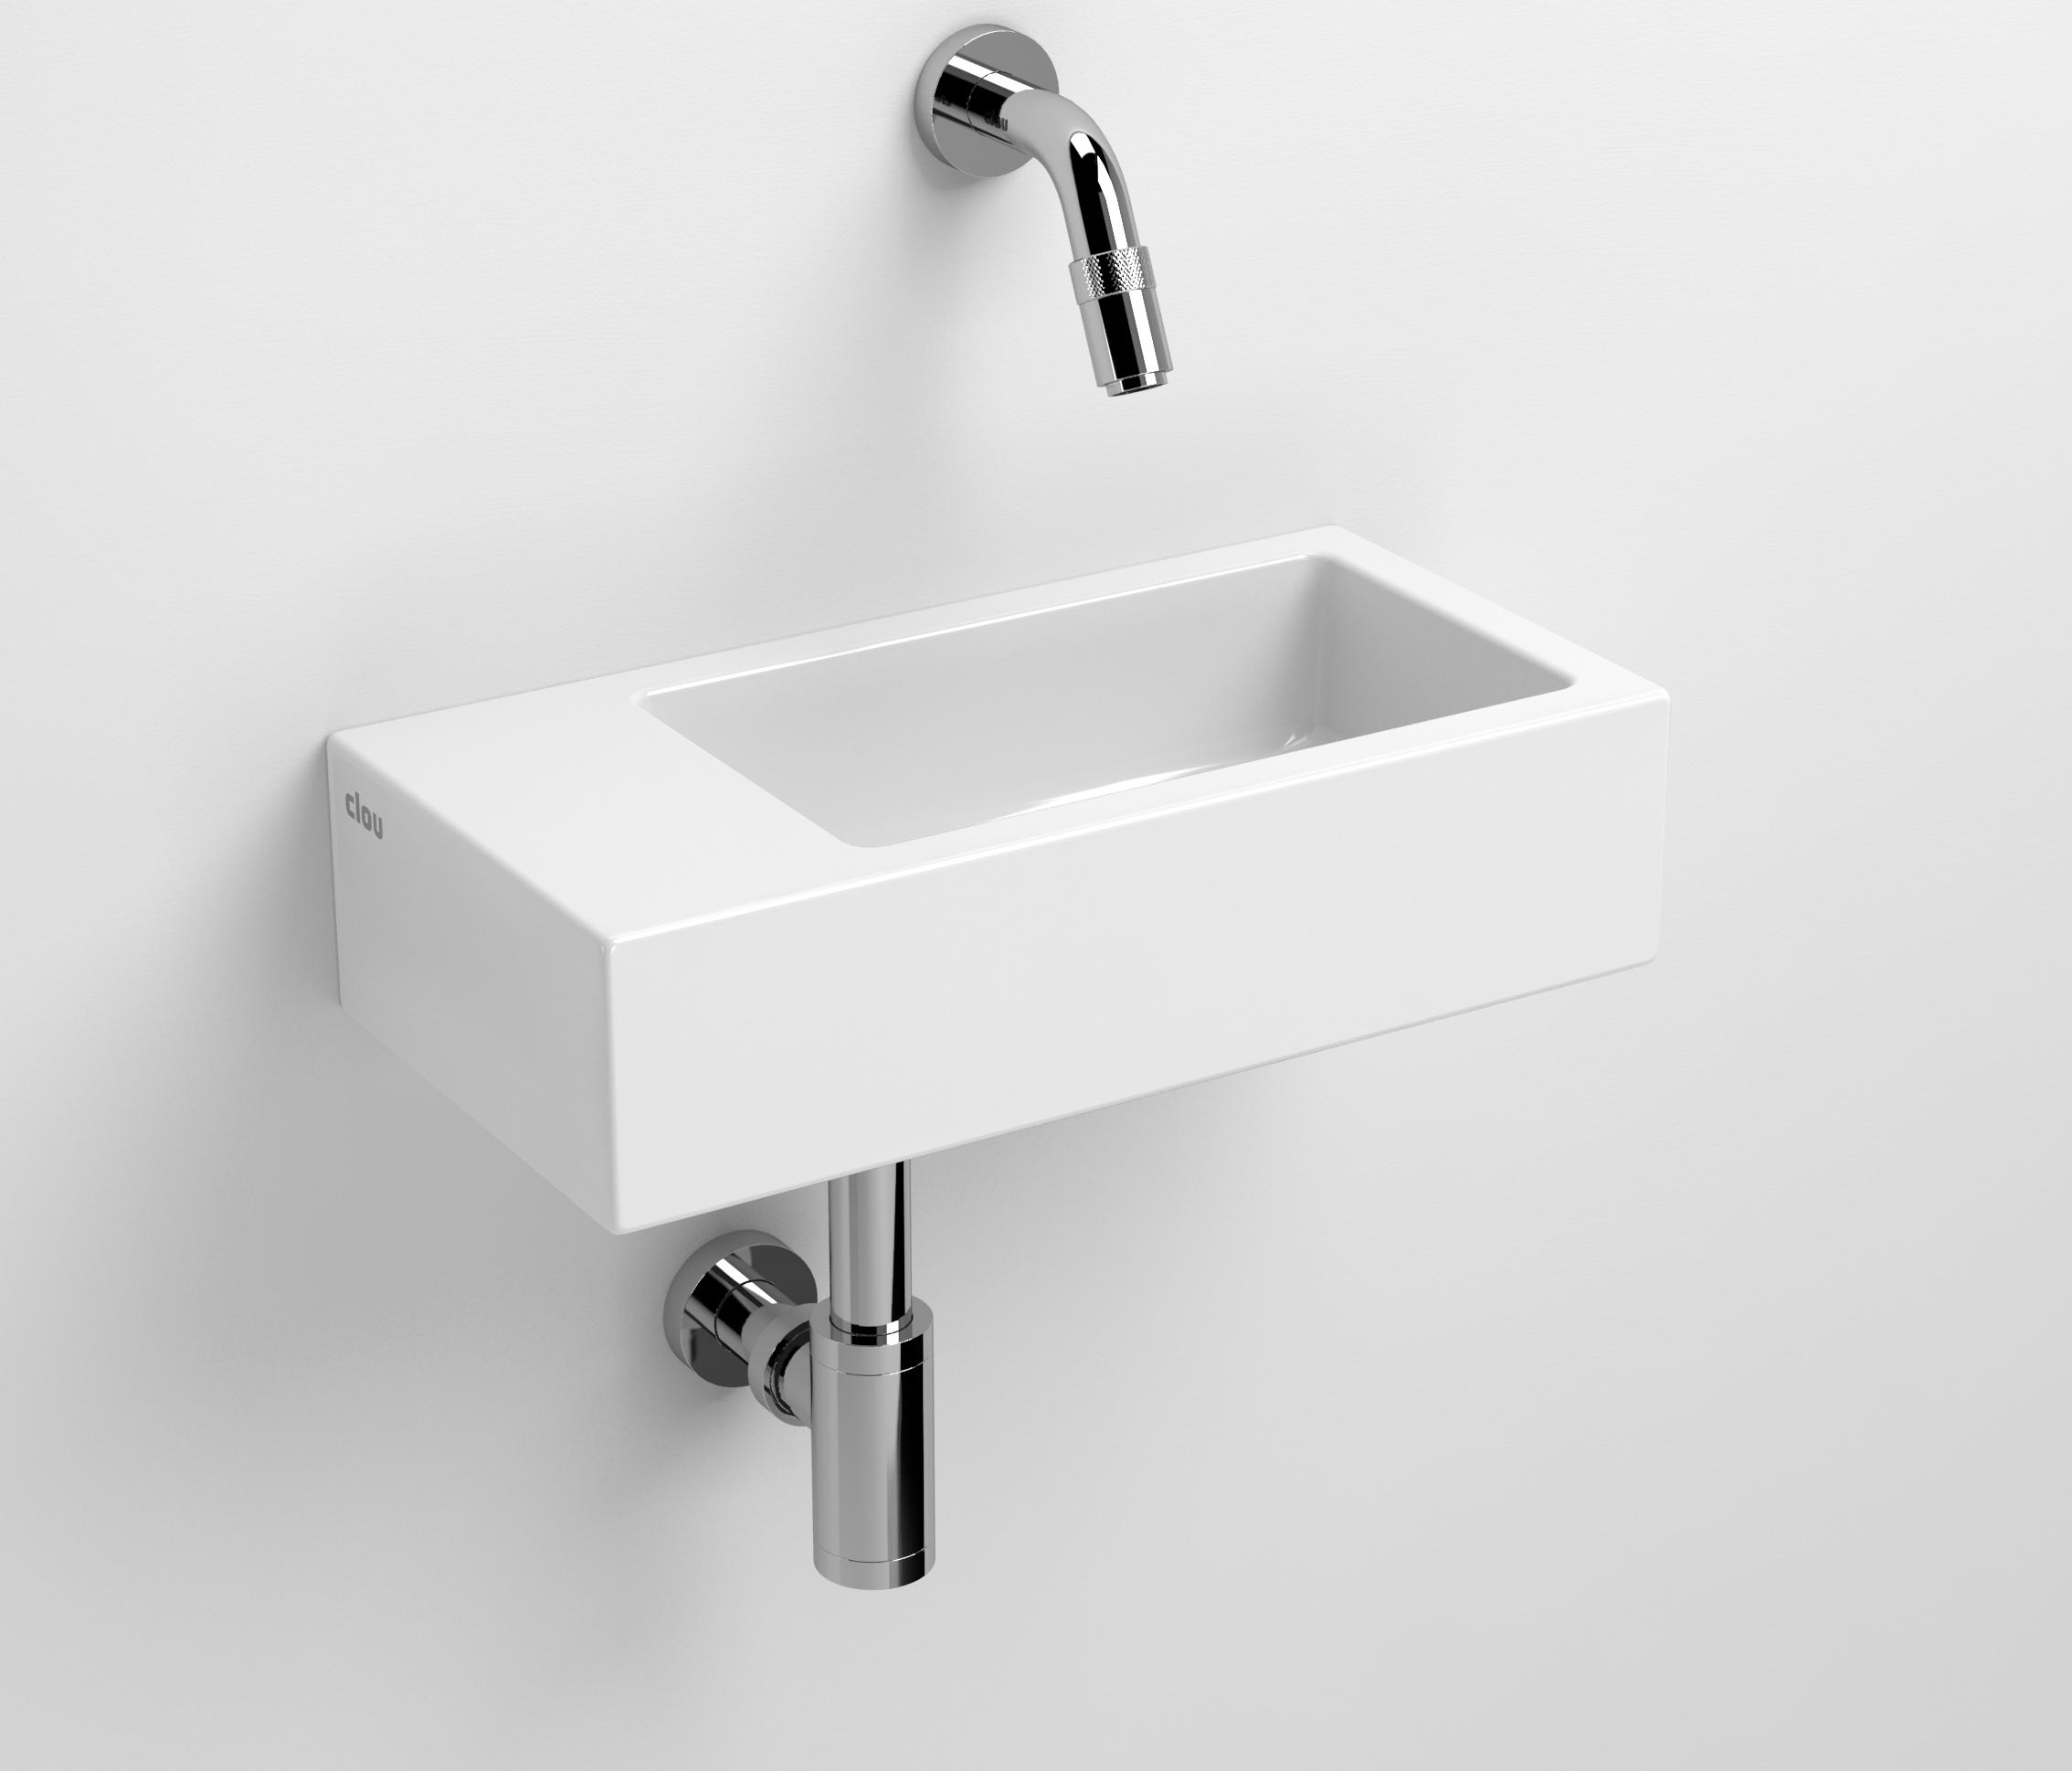 Raad vervormen Maakte zich klaar Flush 3 wash-hand basin CL/03.03033 | Architonic